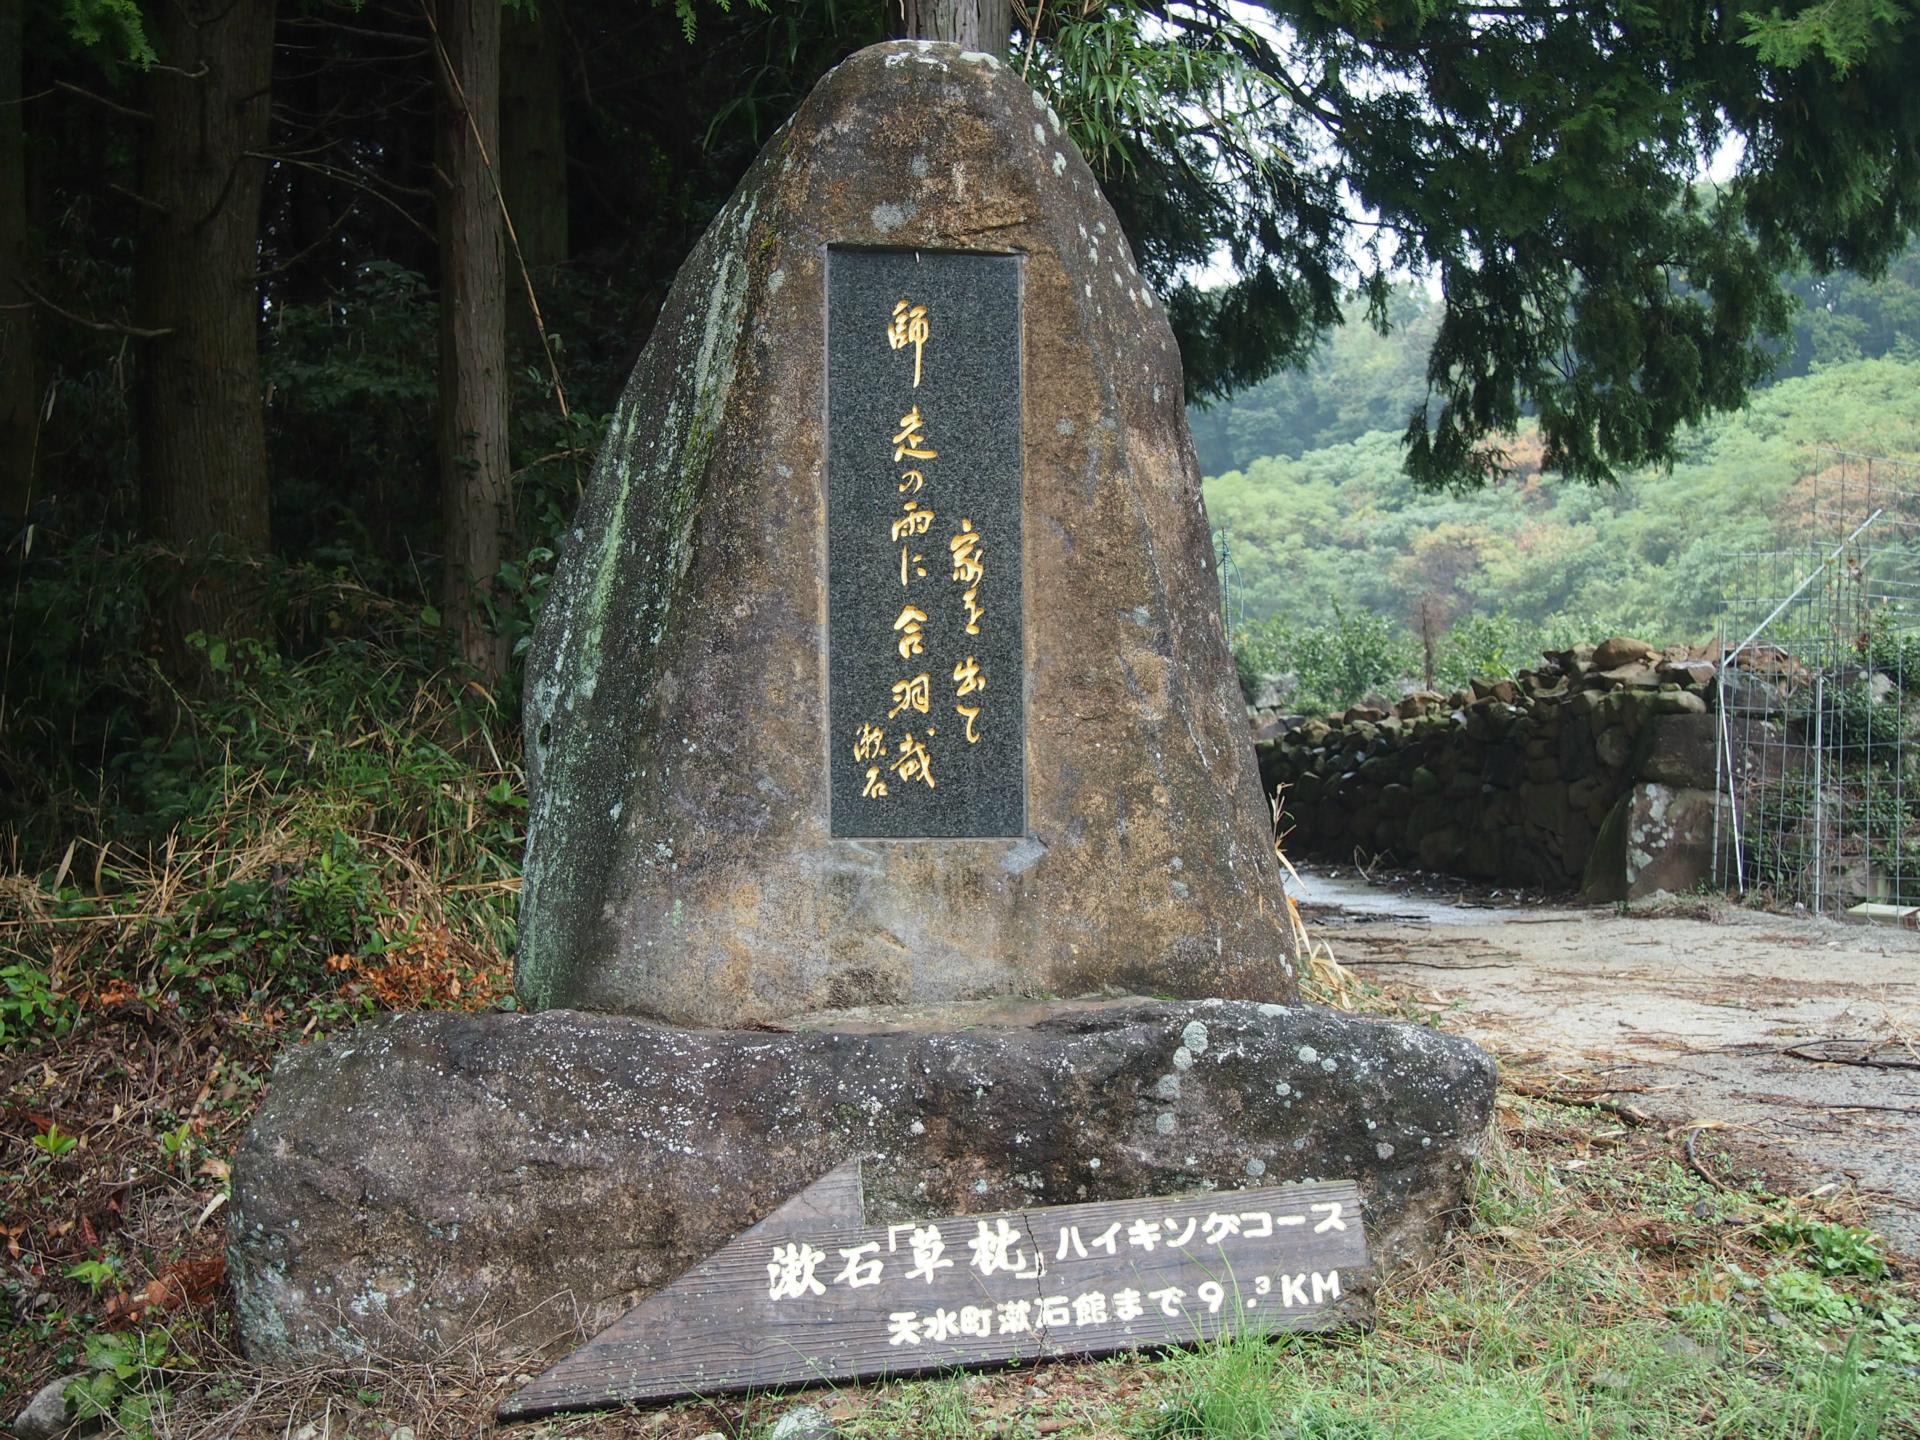 漱石が辿った道 小説 草枕 道中の道をｊｒ九州ウォーキングで歩く ぼくちゃん 相棒 の ひ と り ご と